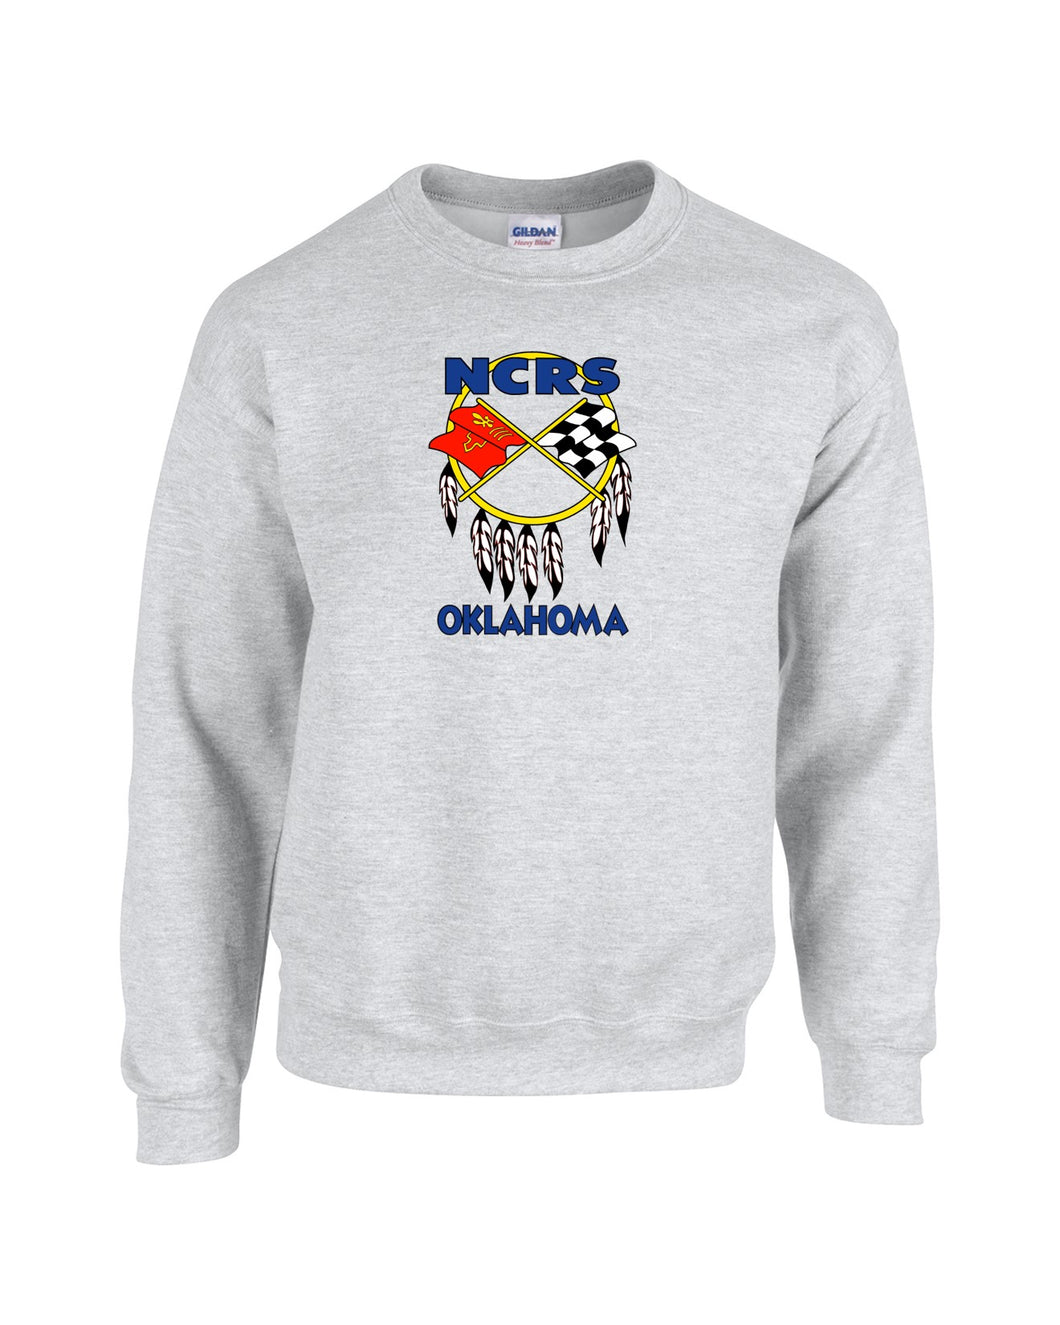 NCRS OKLAHOMA CHAPTER Sweatshirt (PRINTED)